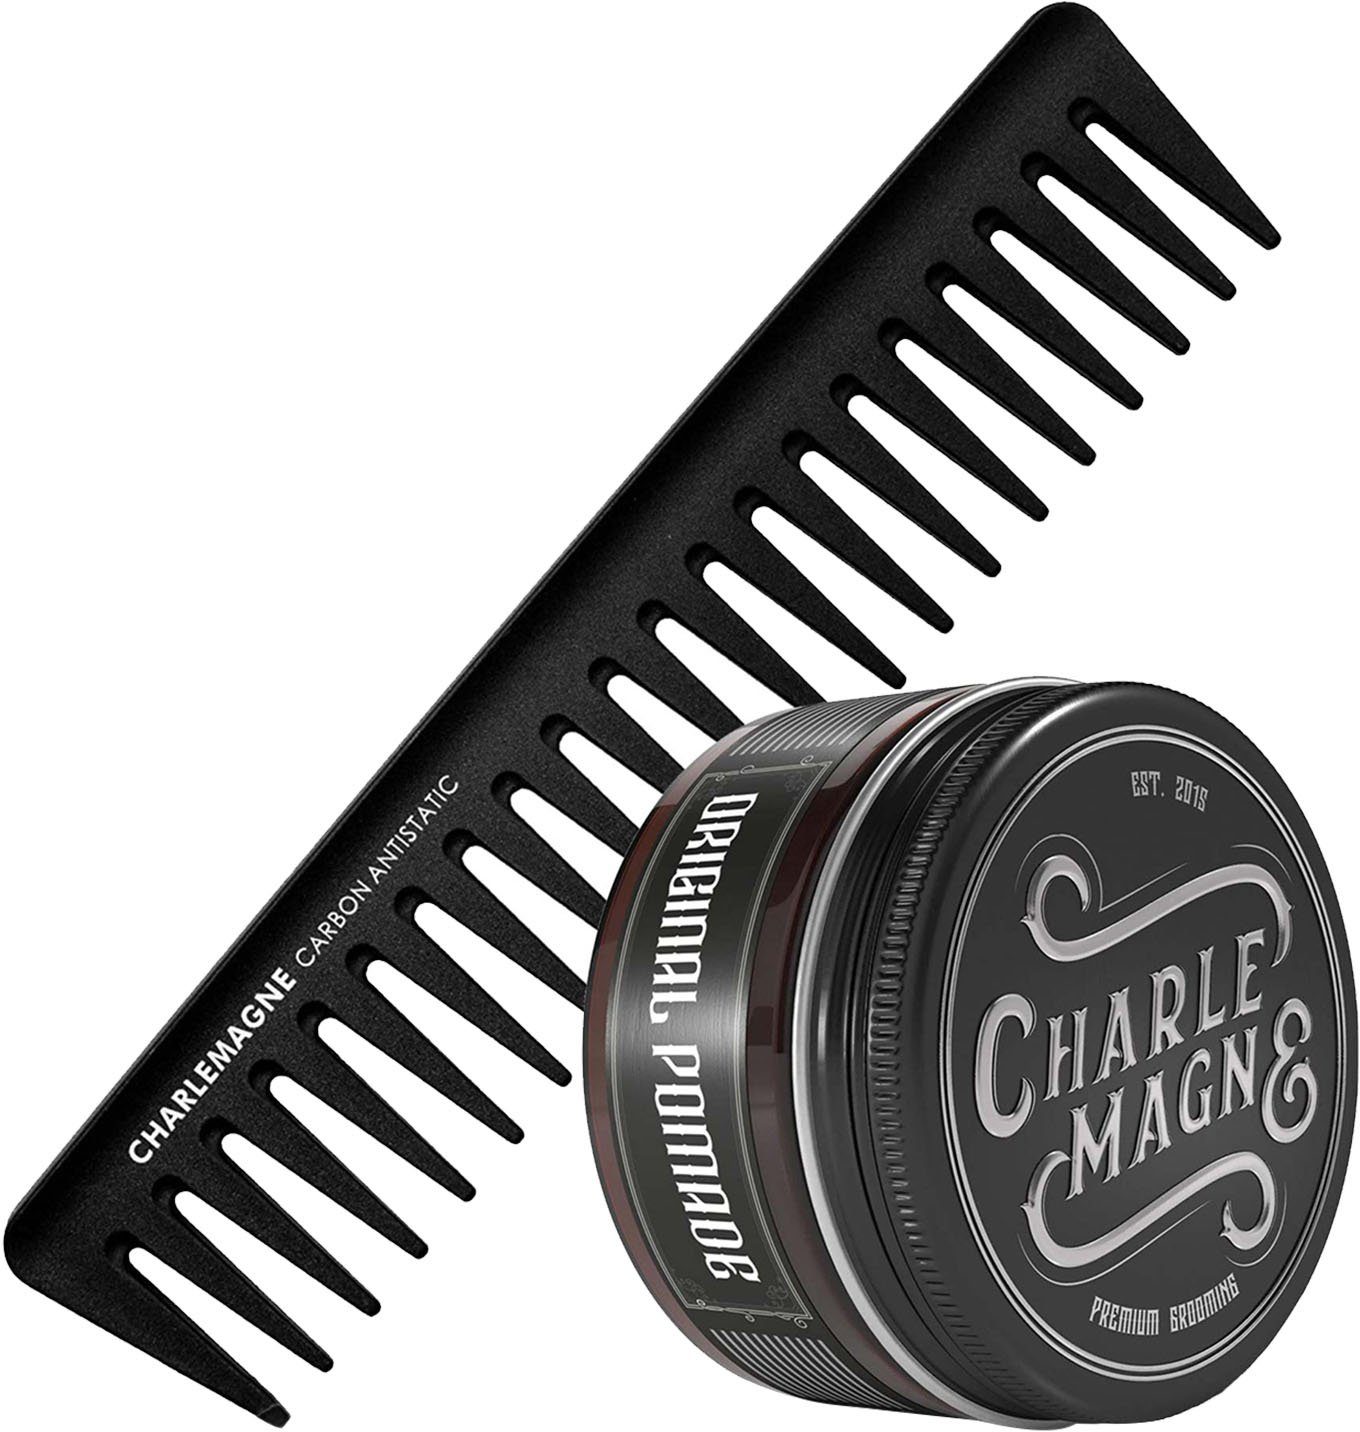 CHARLEMAGNE Haarpflege-Set The OG's Essentials, 2-tlg. | Haarpflege-Sets